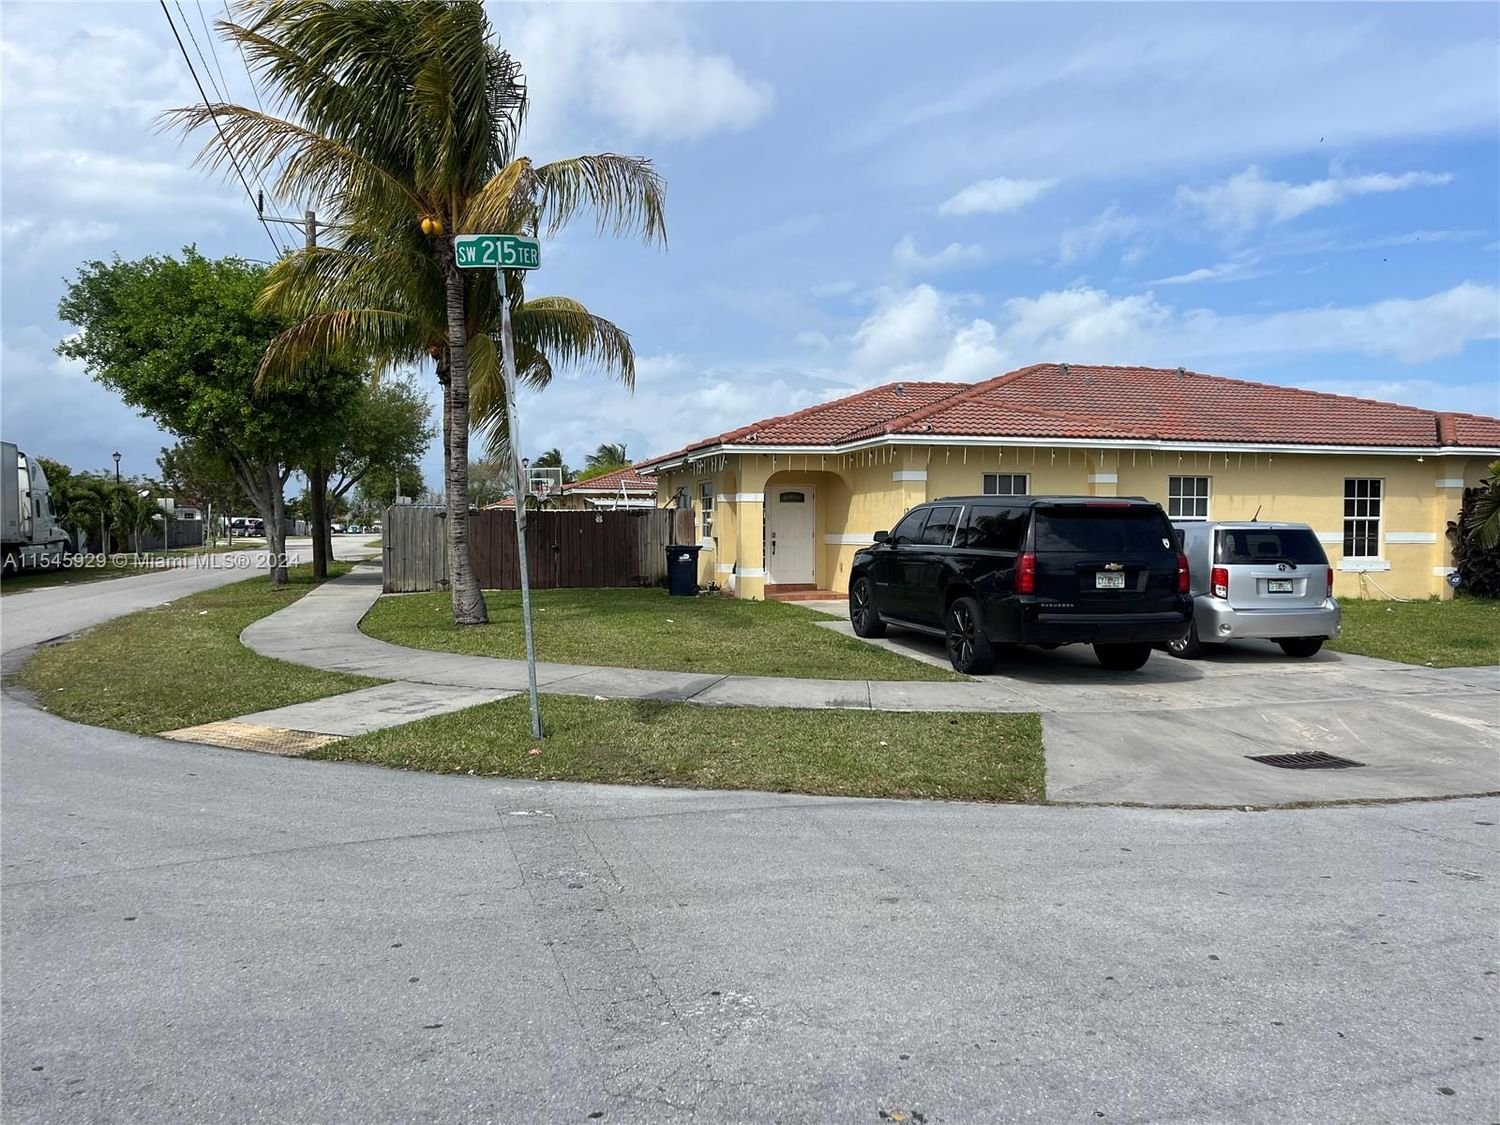 Real estate property located at 12265 215th Ter, Miami-Dade County, IVON CONDO, Miami, FL